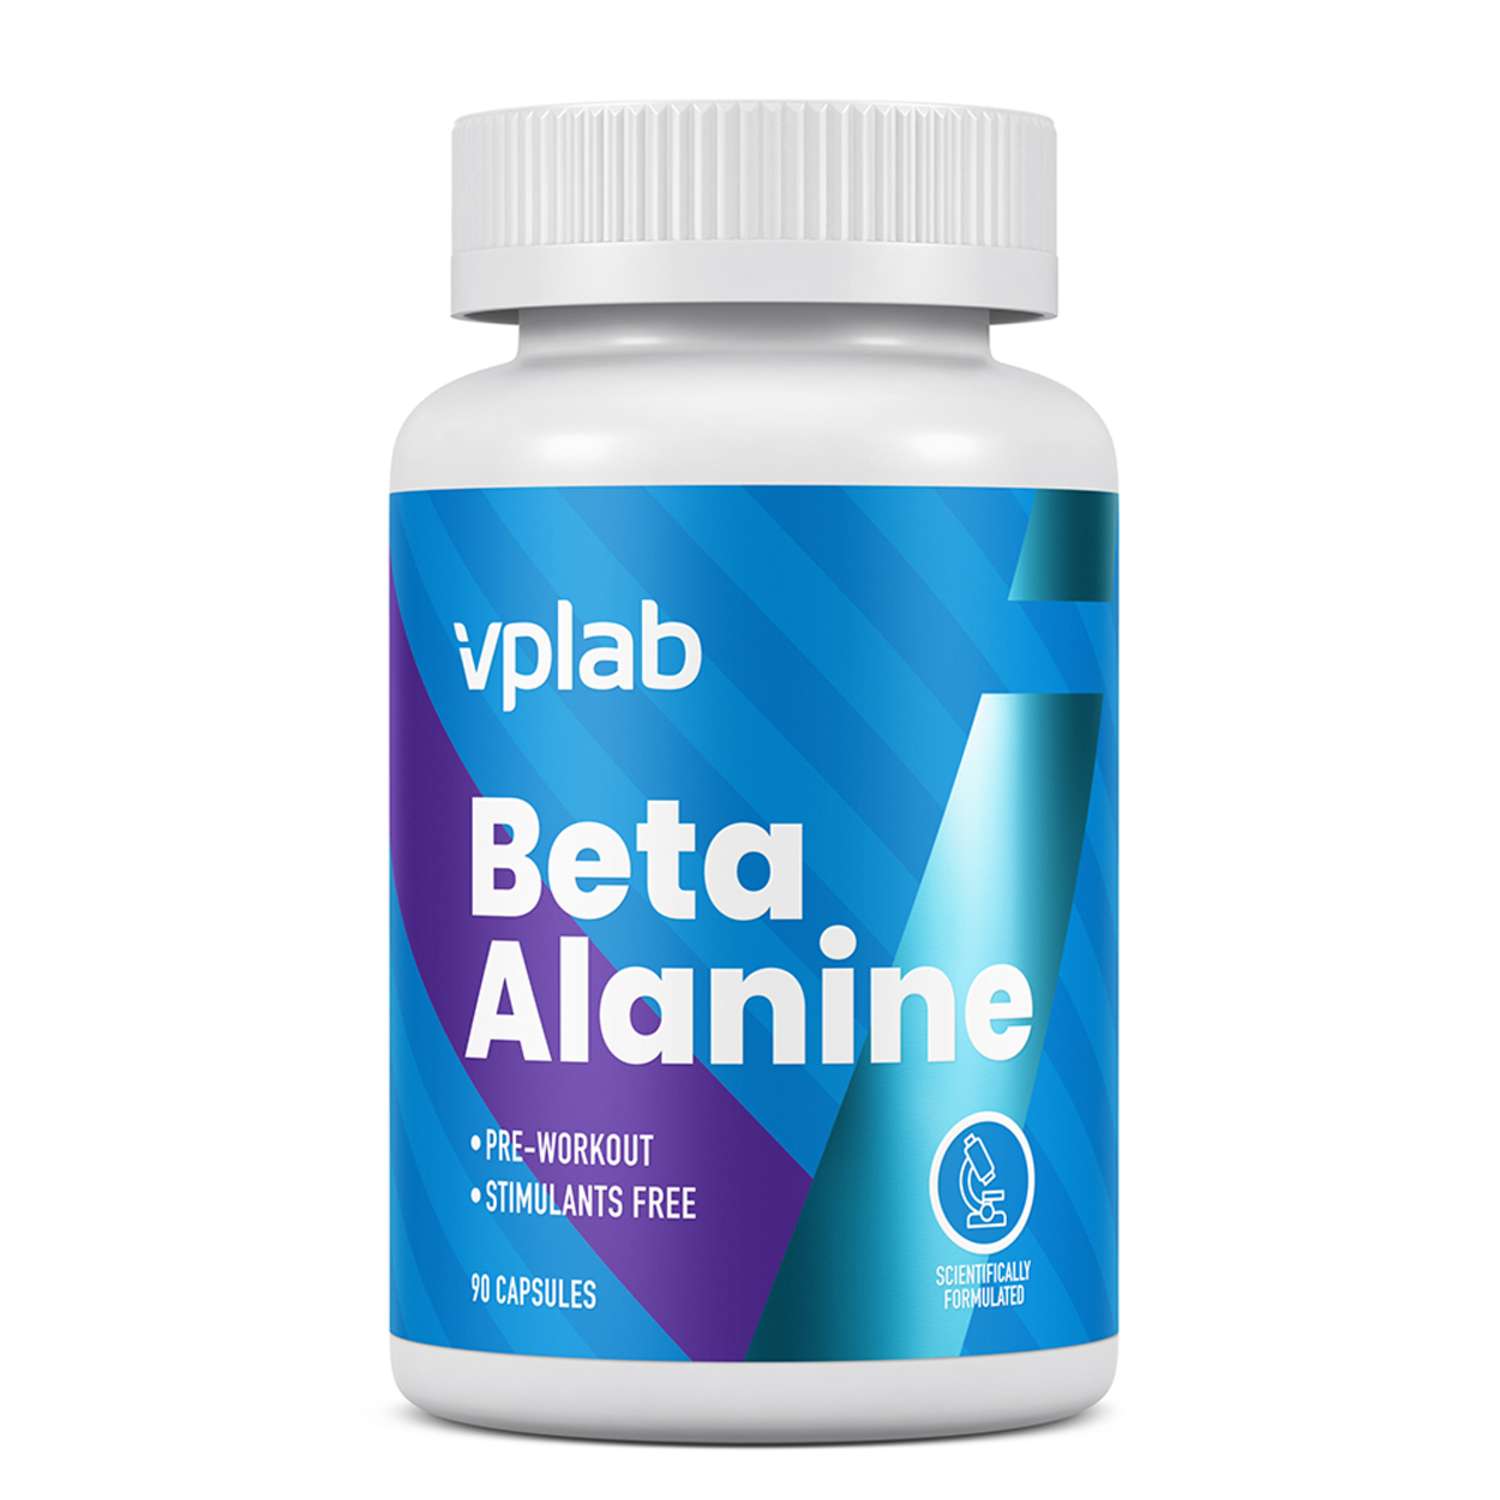 Биологически активная добавка VPLAB Бета-Аланин 90капсул - фото 1